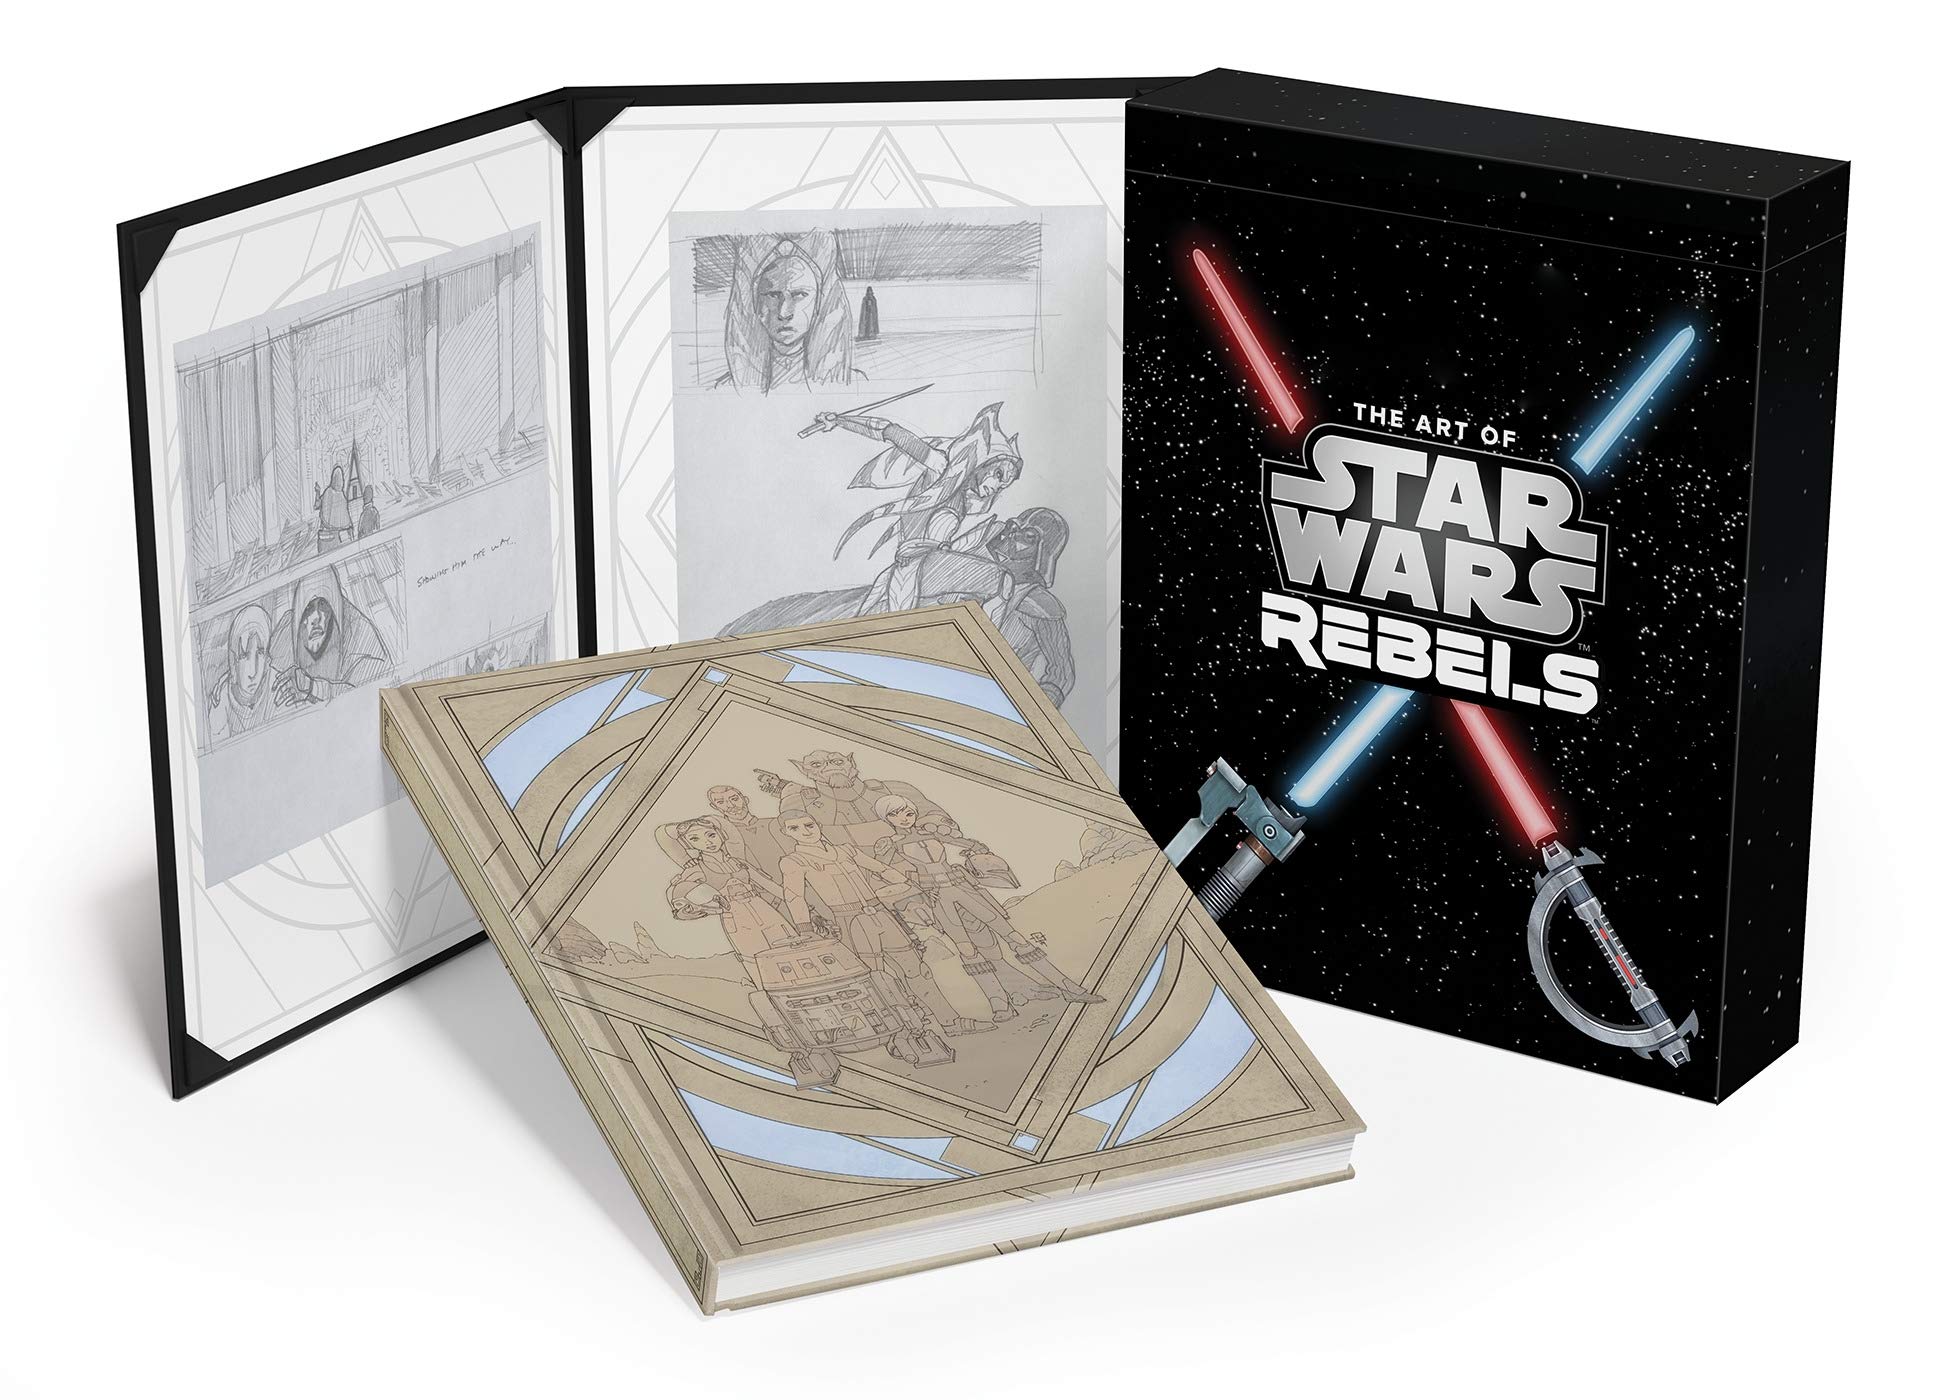 Plik:Rebels Limited Edition.jpg